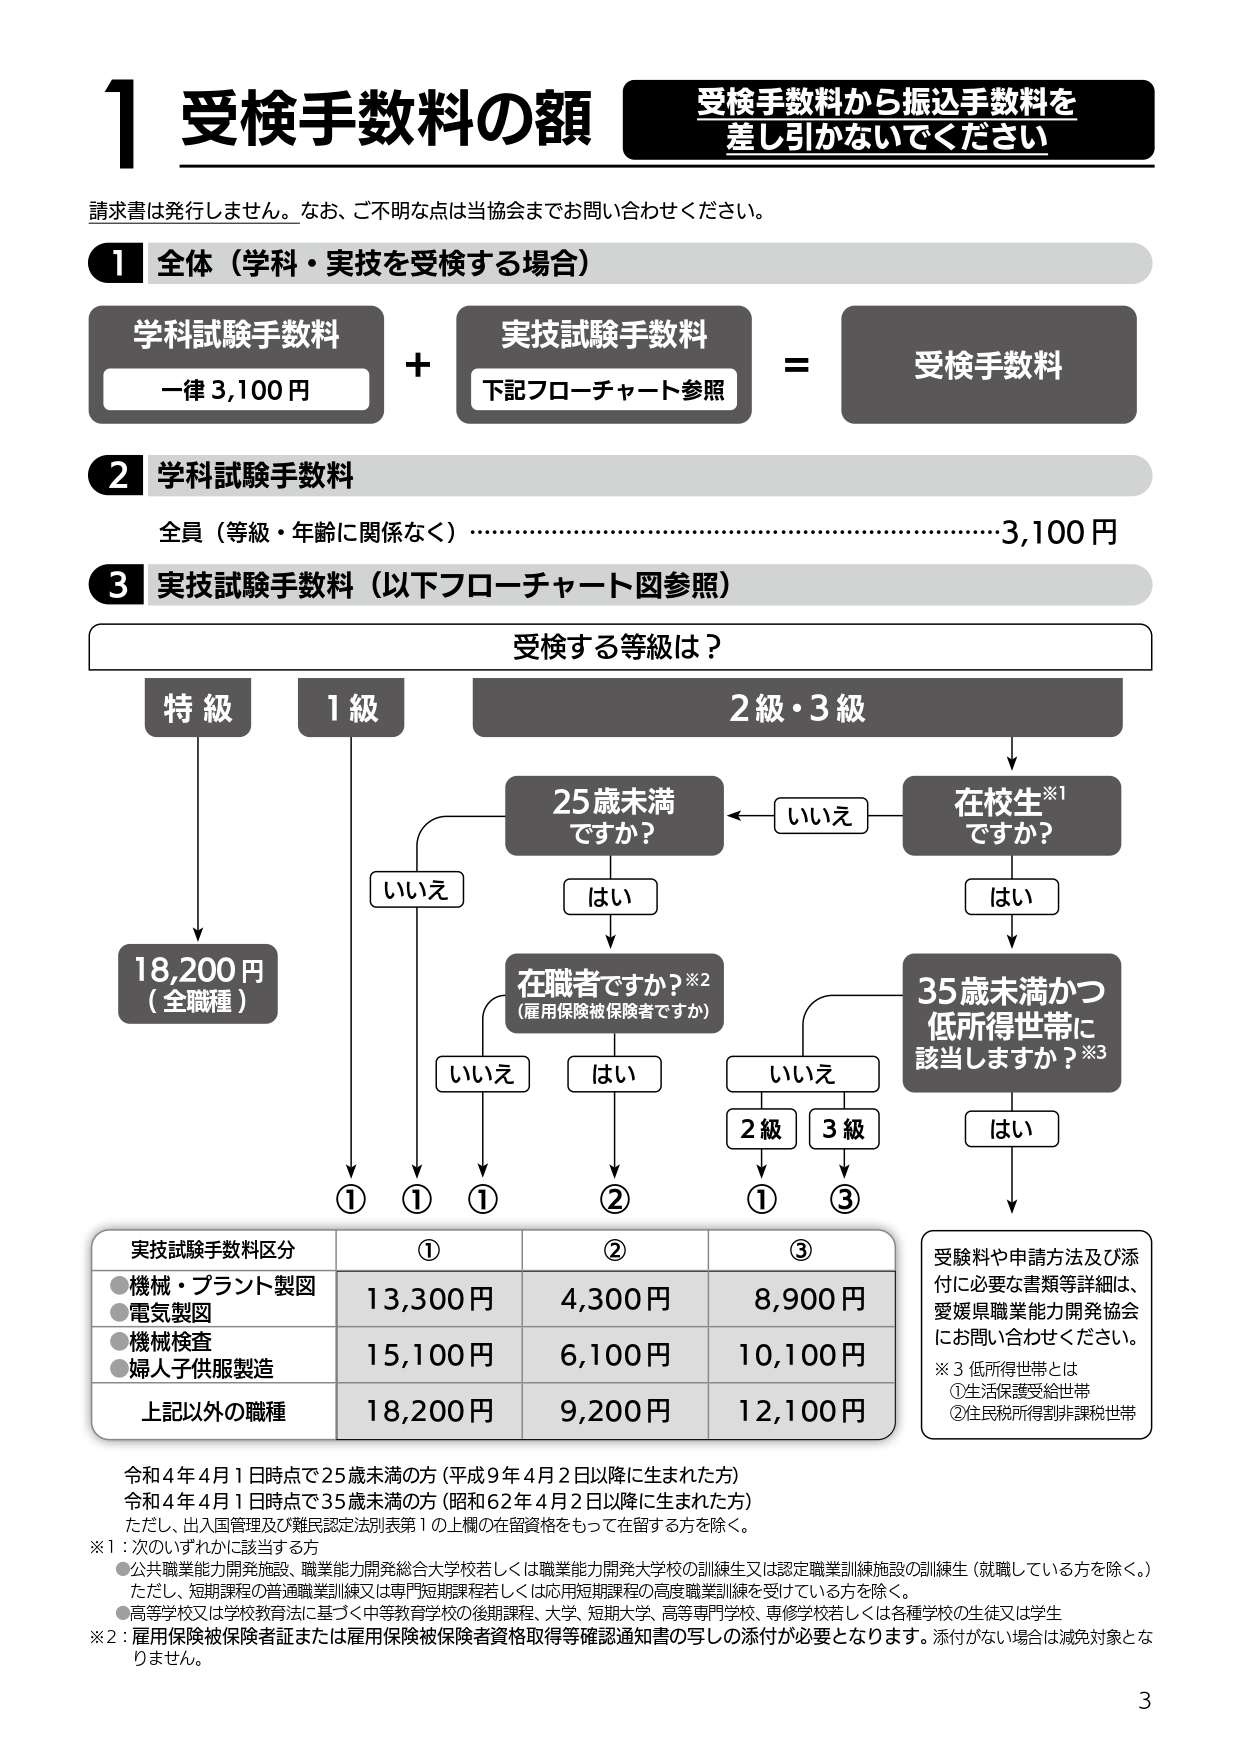 受検手数料のフローチャート.jpg